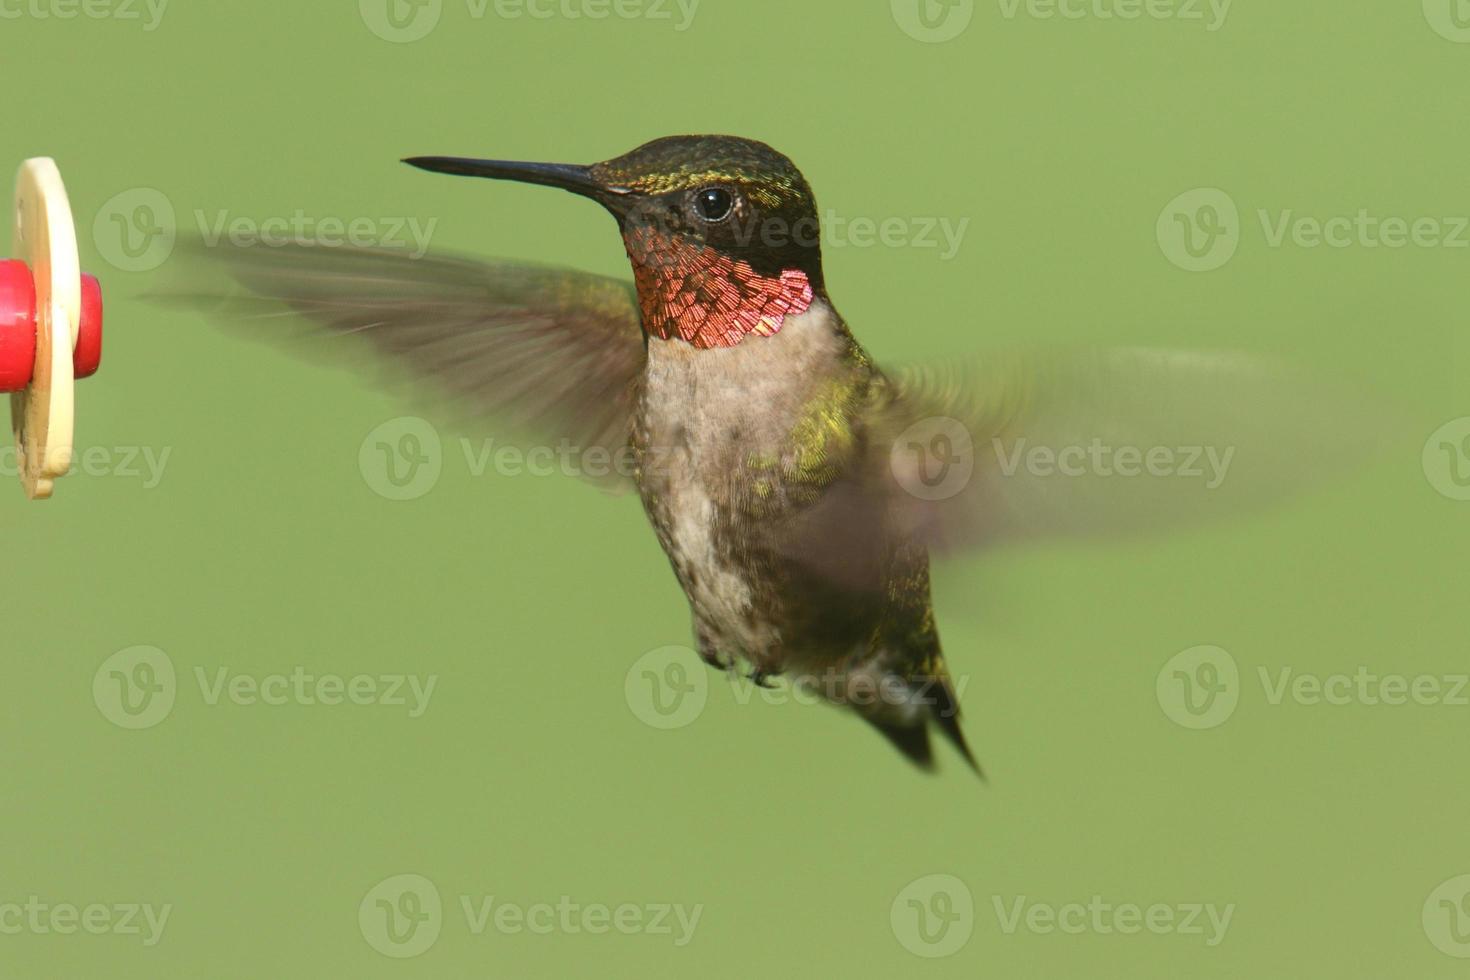 rubin-halsad kolibri (archilochus colubris) foto